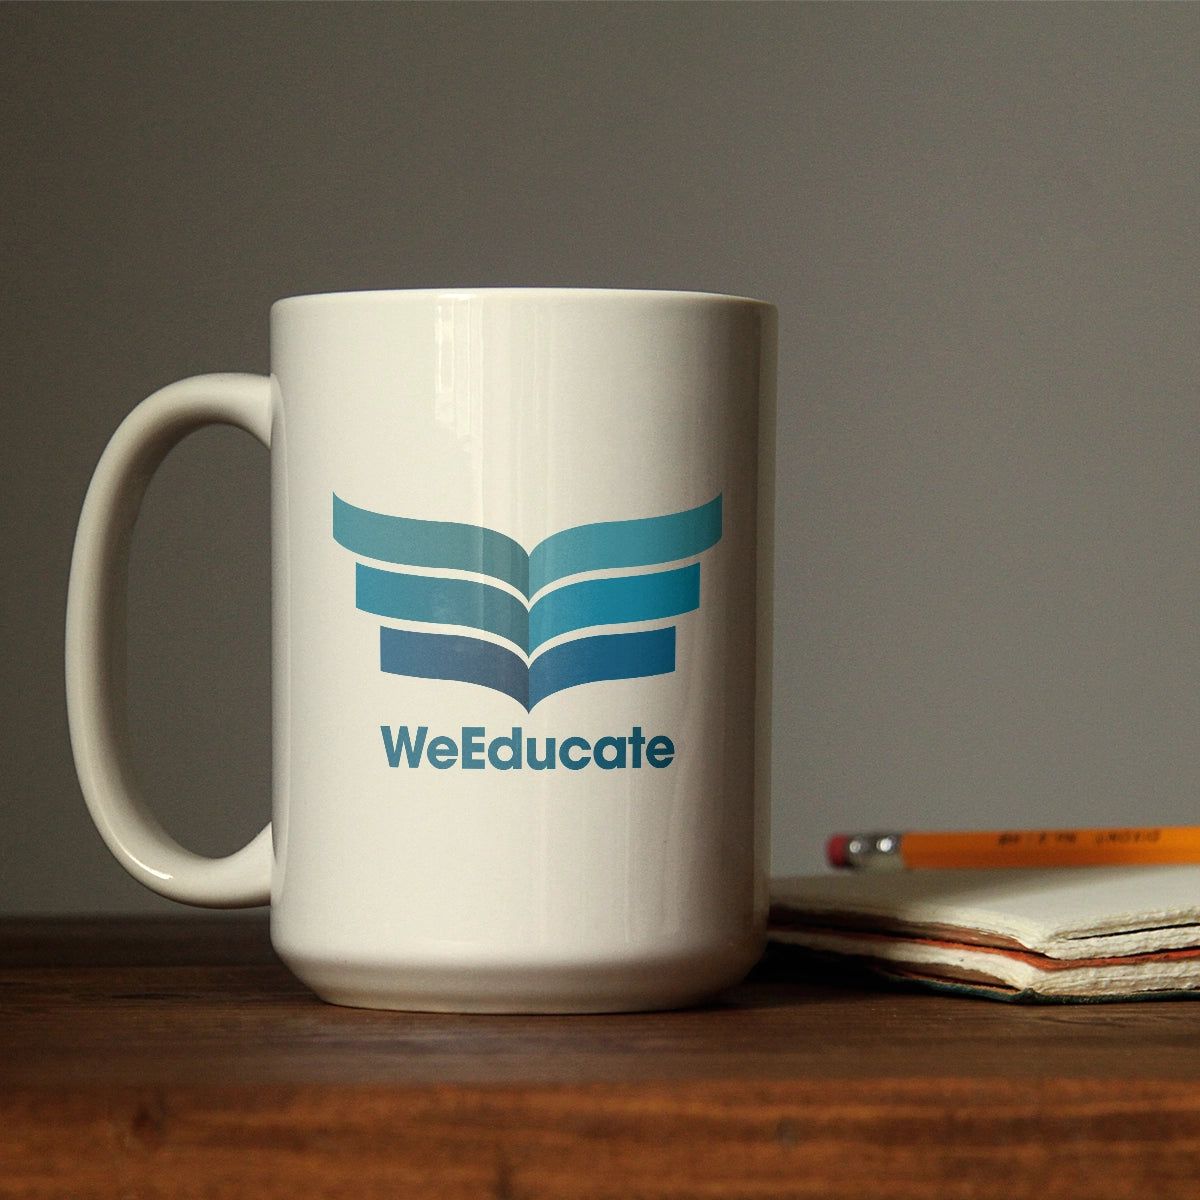 weeducate.com